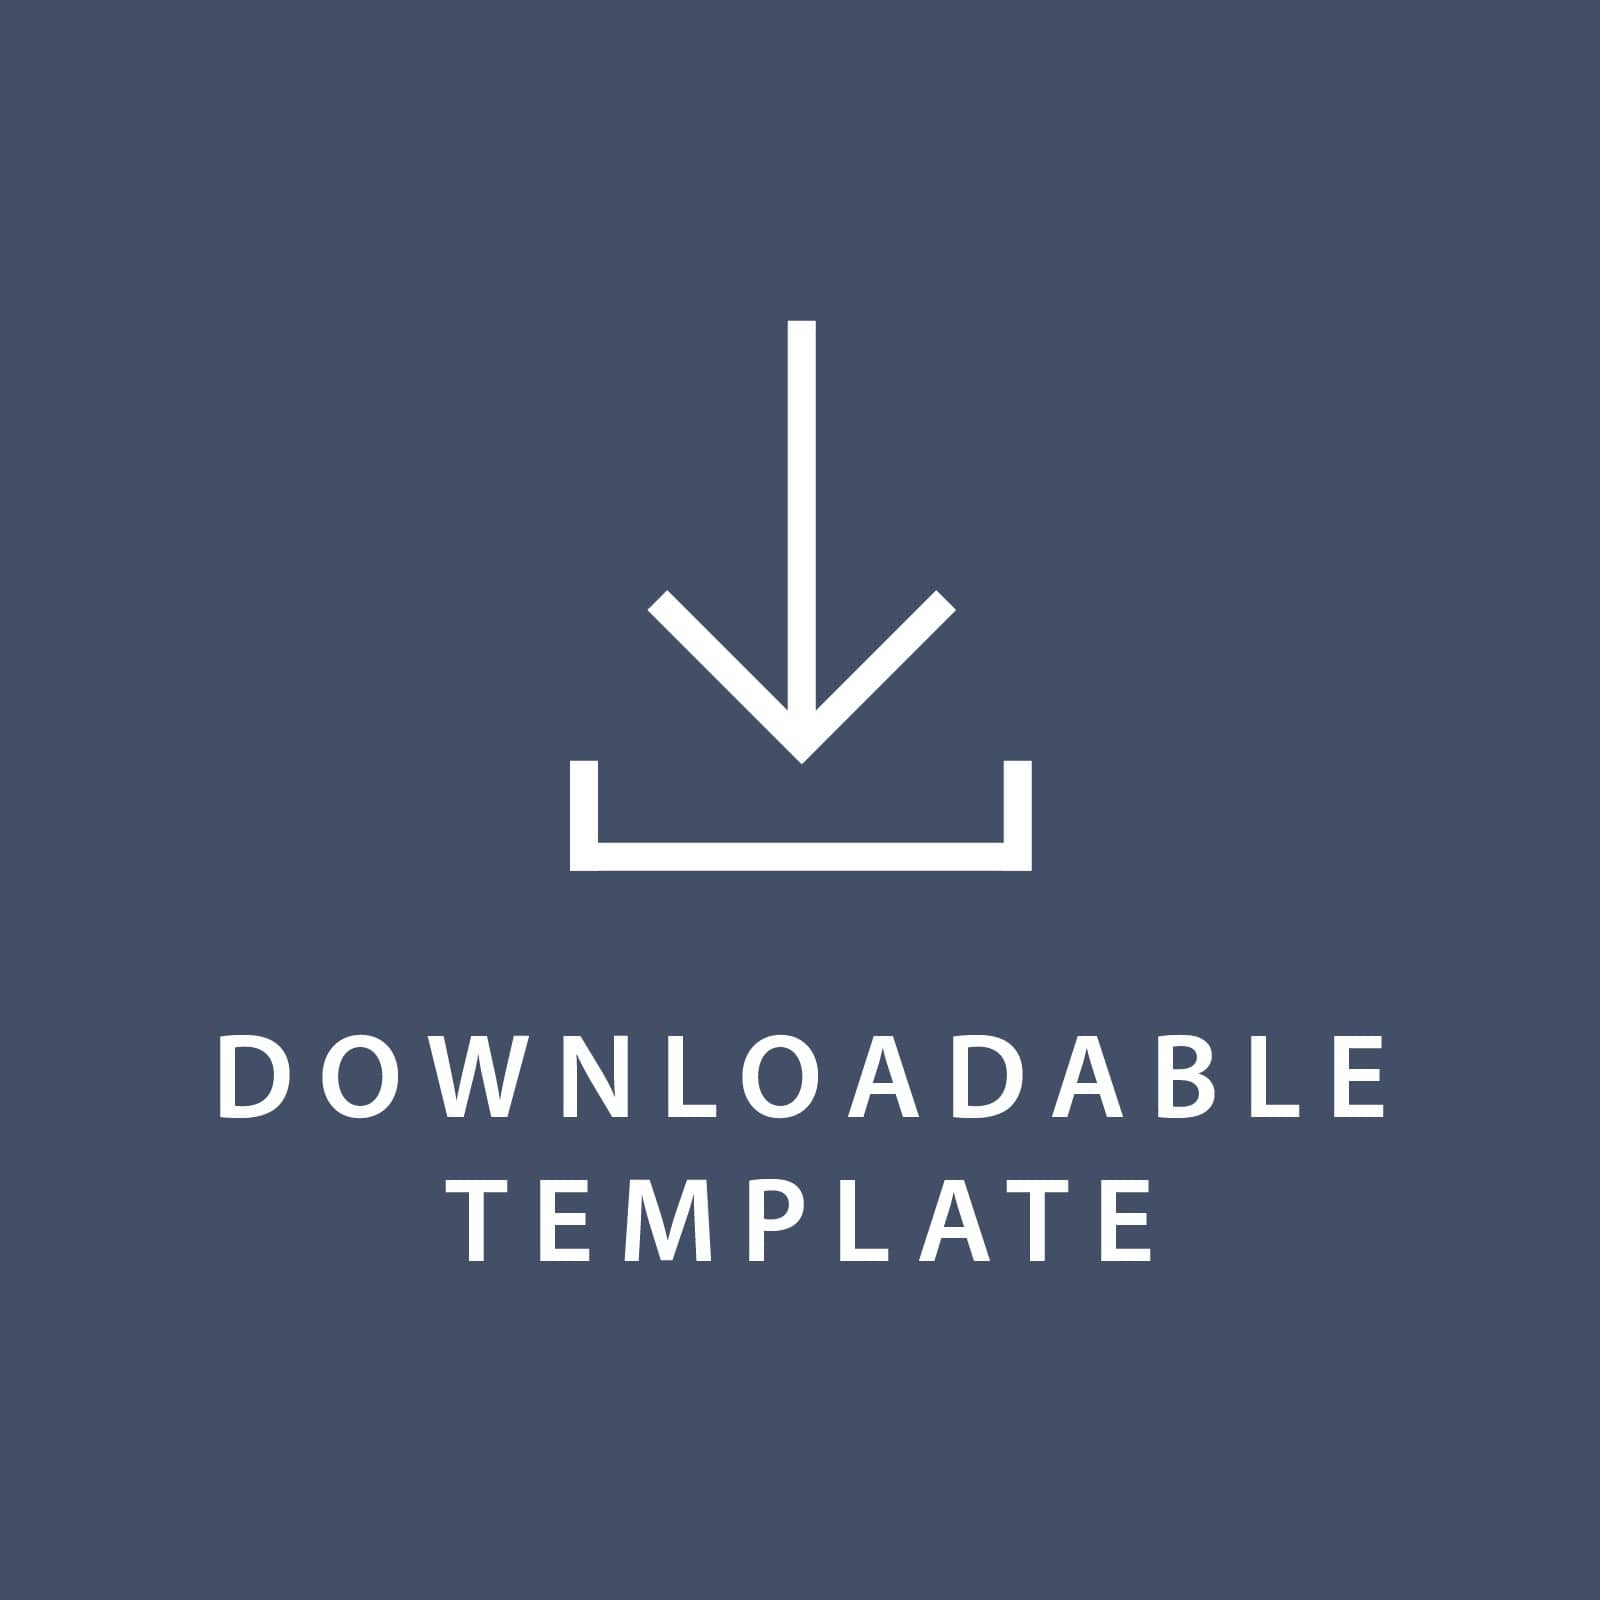 Template for 4. 5 x 6.5 Invitations Gartner Studios Template tmplt0869